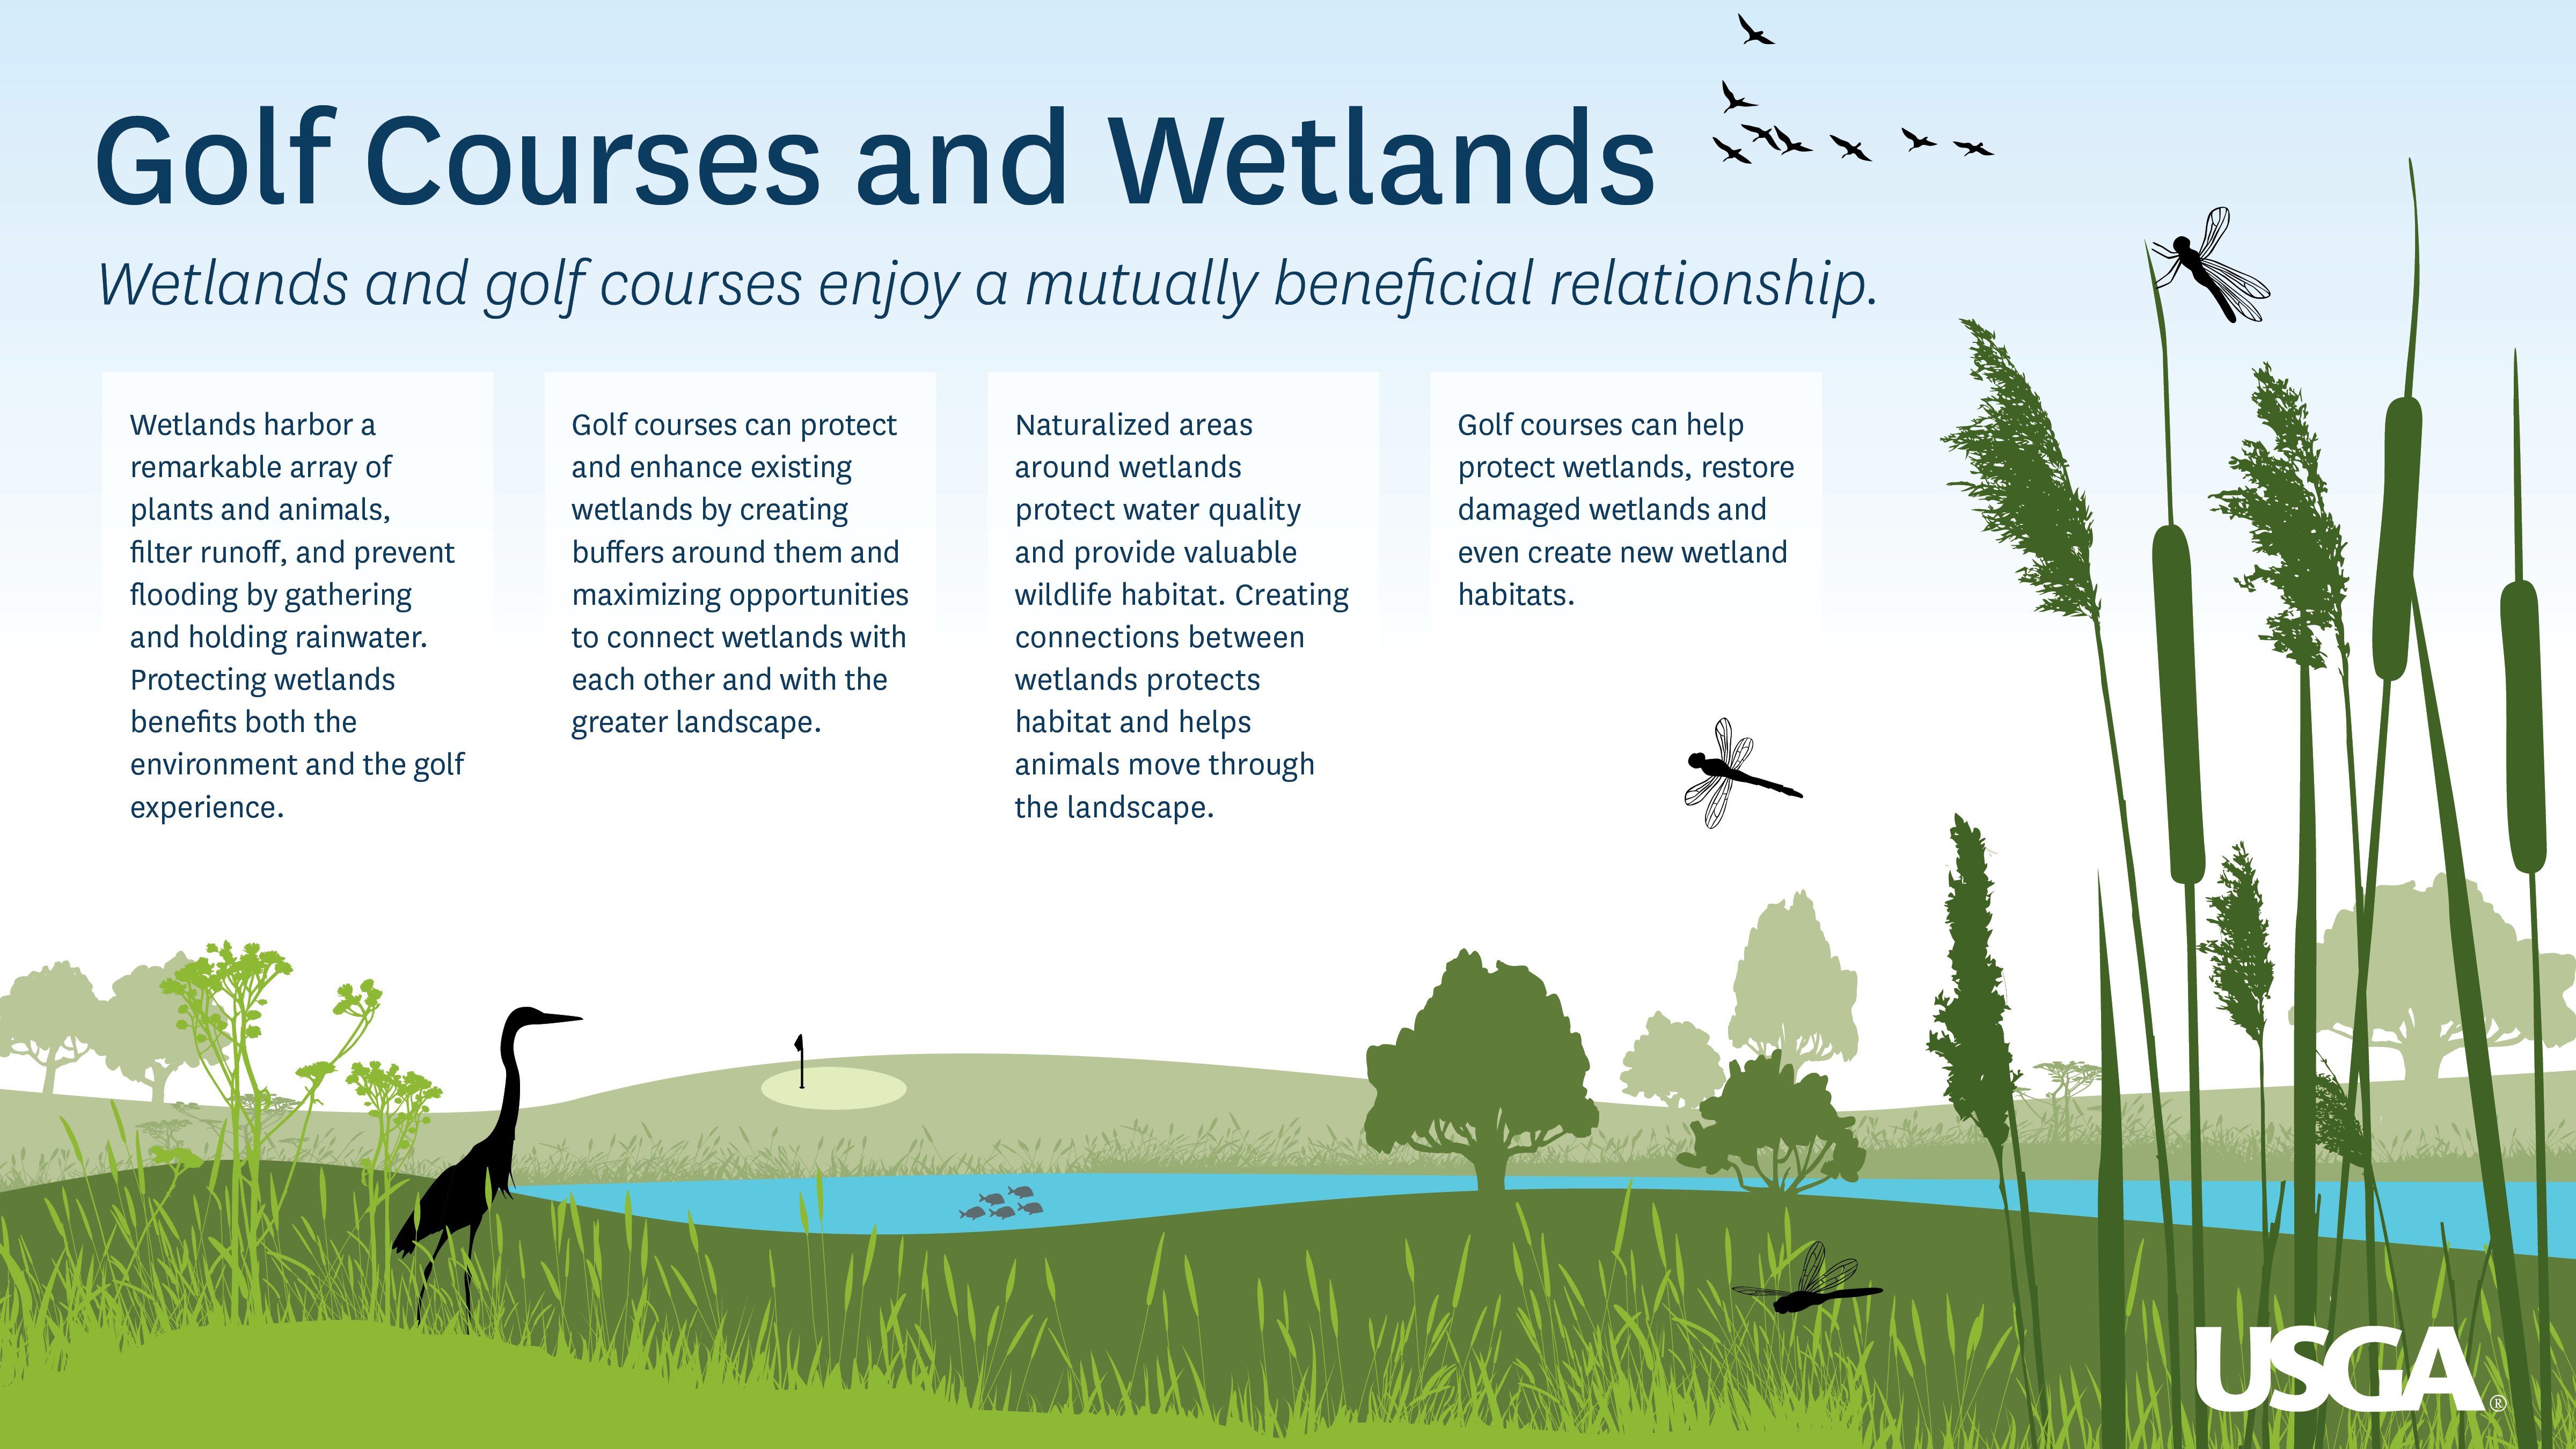 The wetlands amateur